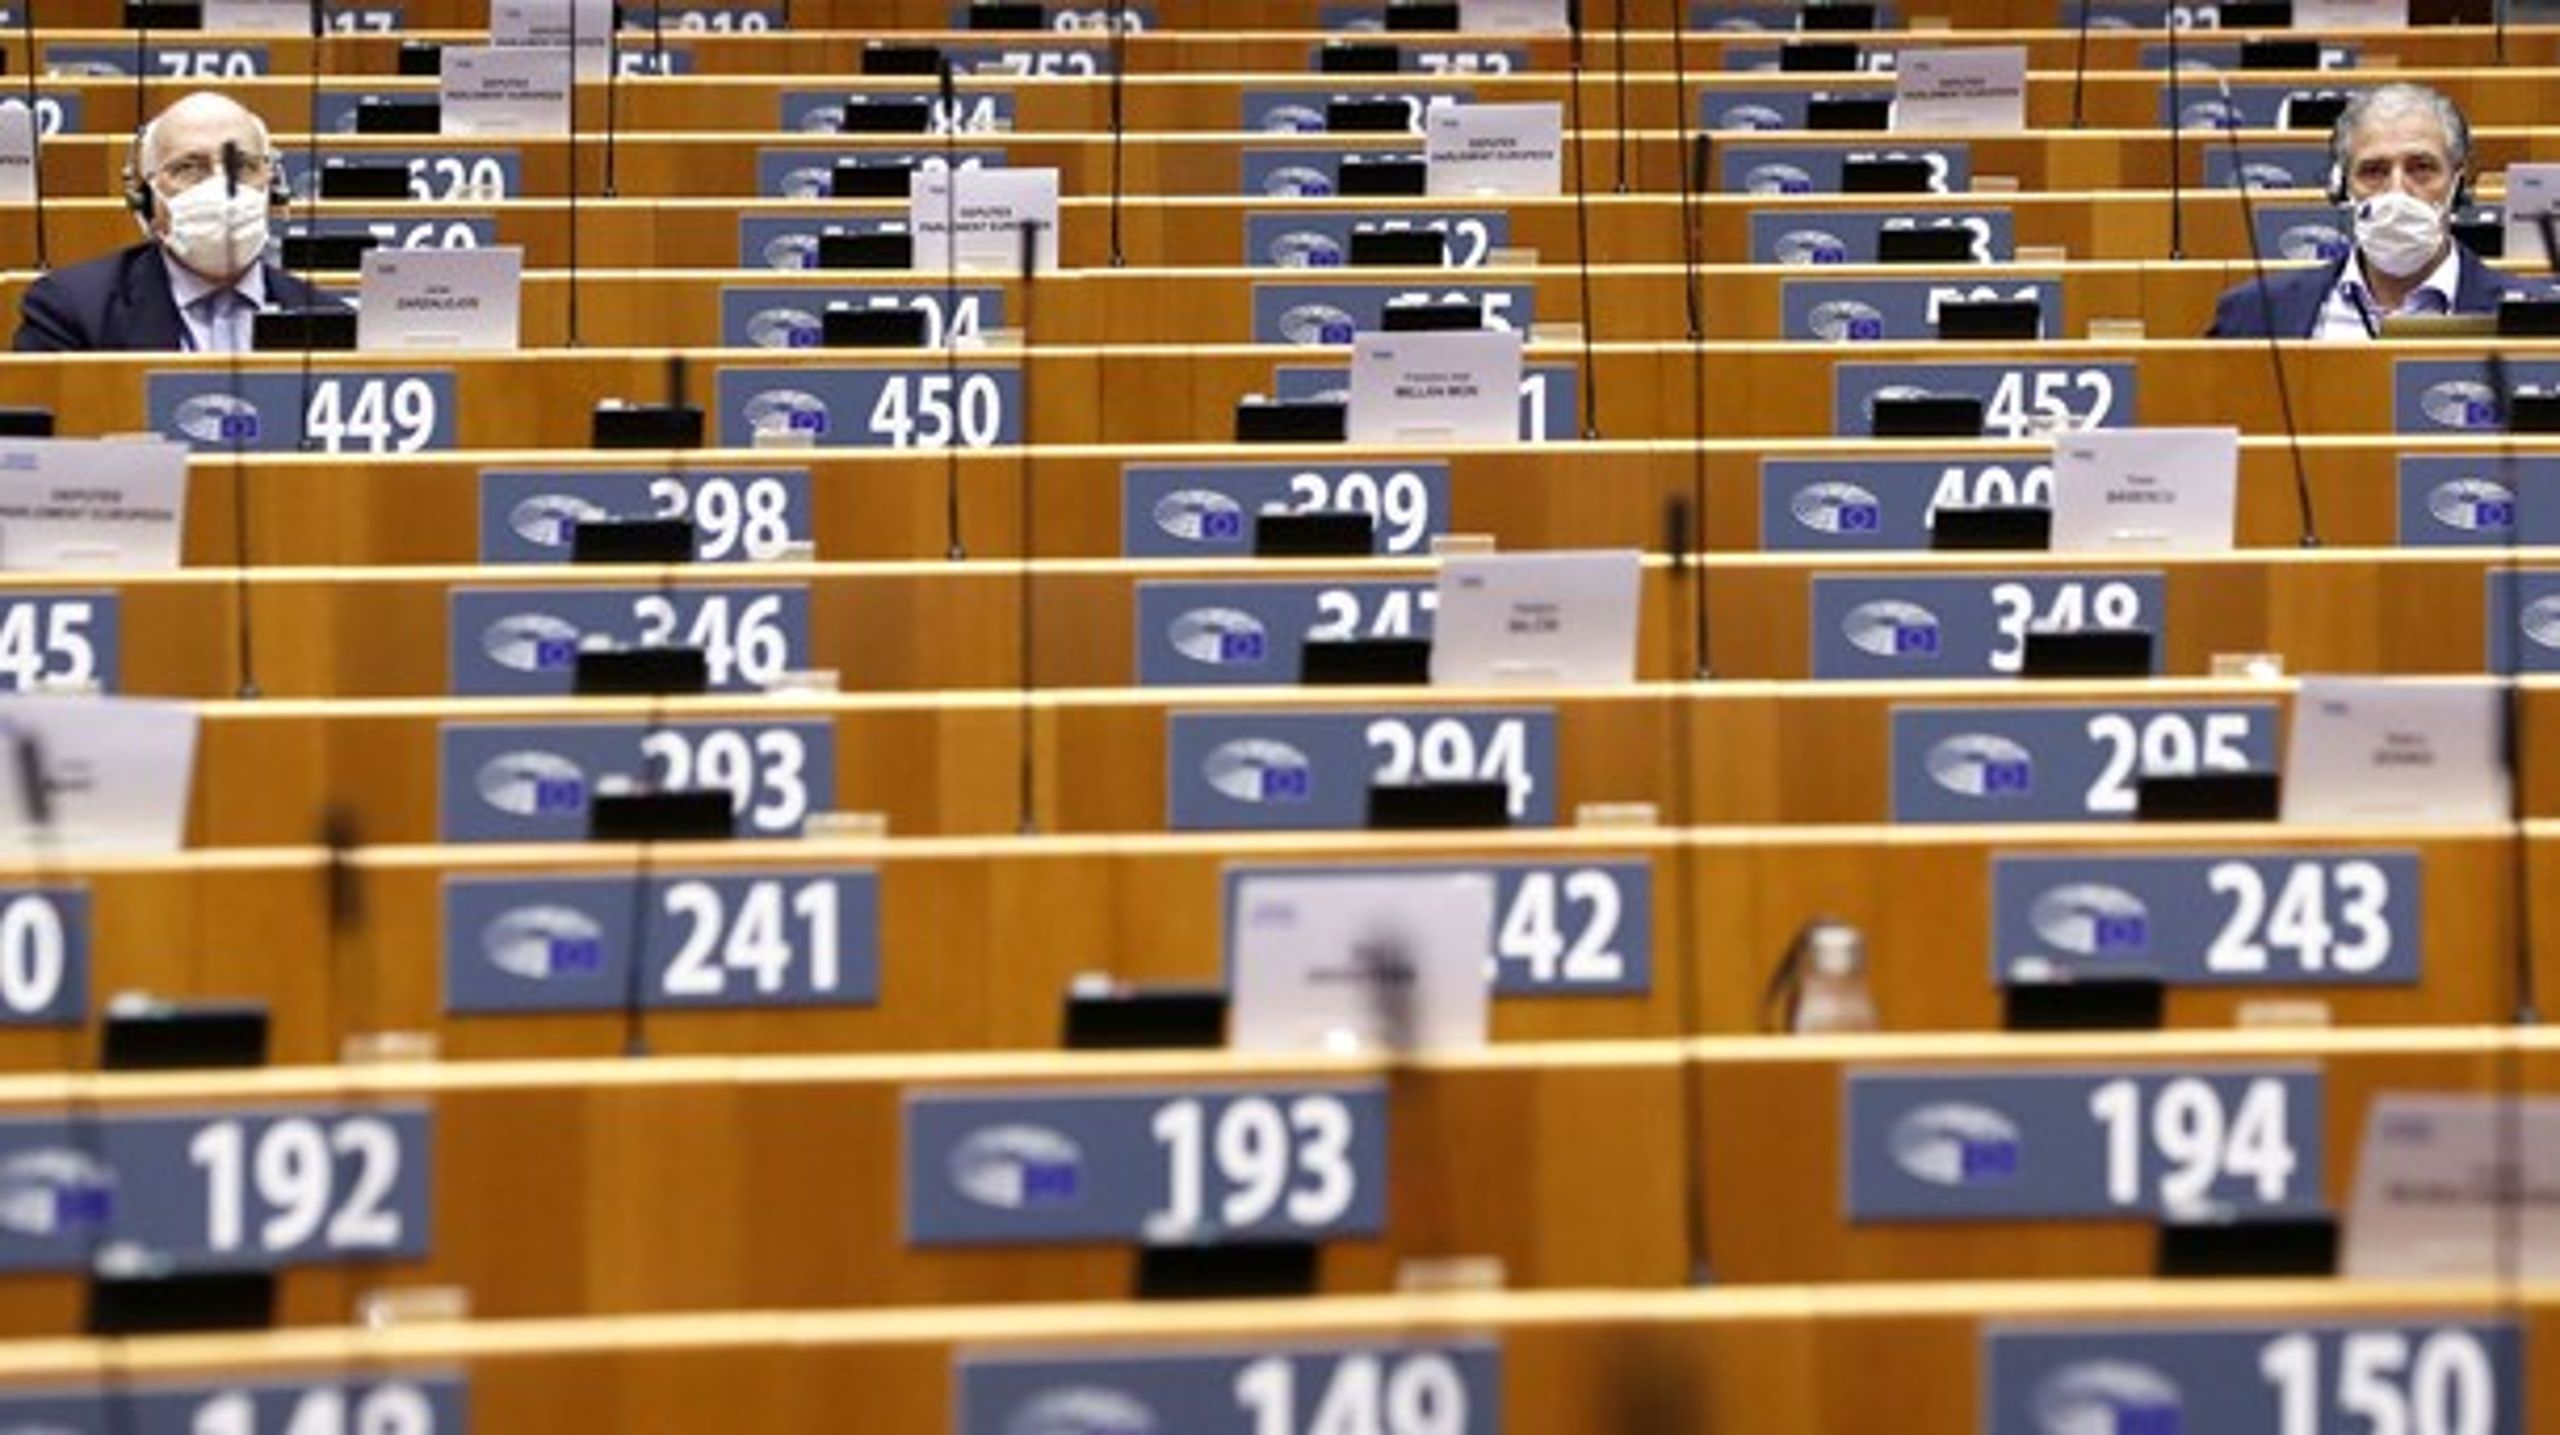 Plenarsalen&nbsp;i Bruxelles havde mange tomme pladser ved afstemningen i onsdags, da europaparlamentarikerne på grund af coronasituationen har fået lov til at stemme hjemmefra.